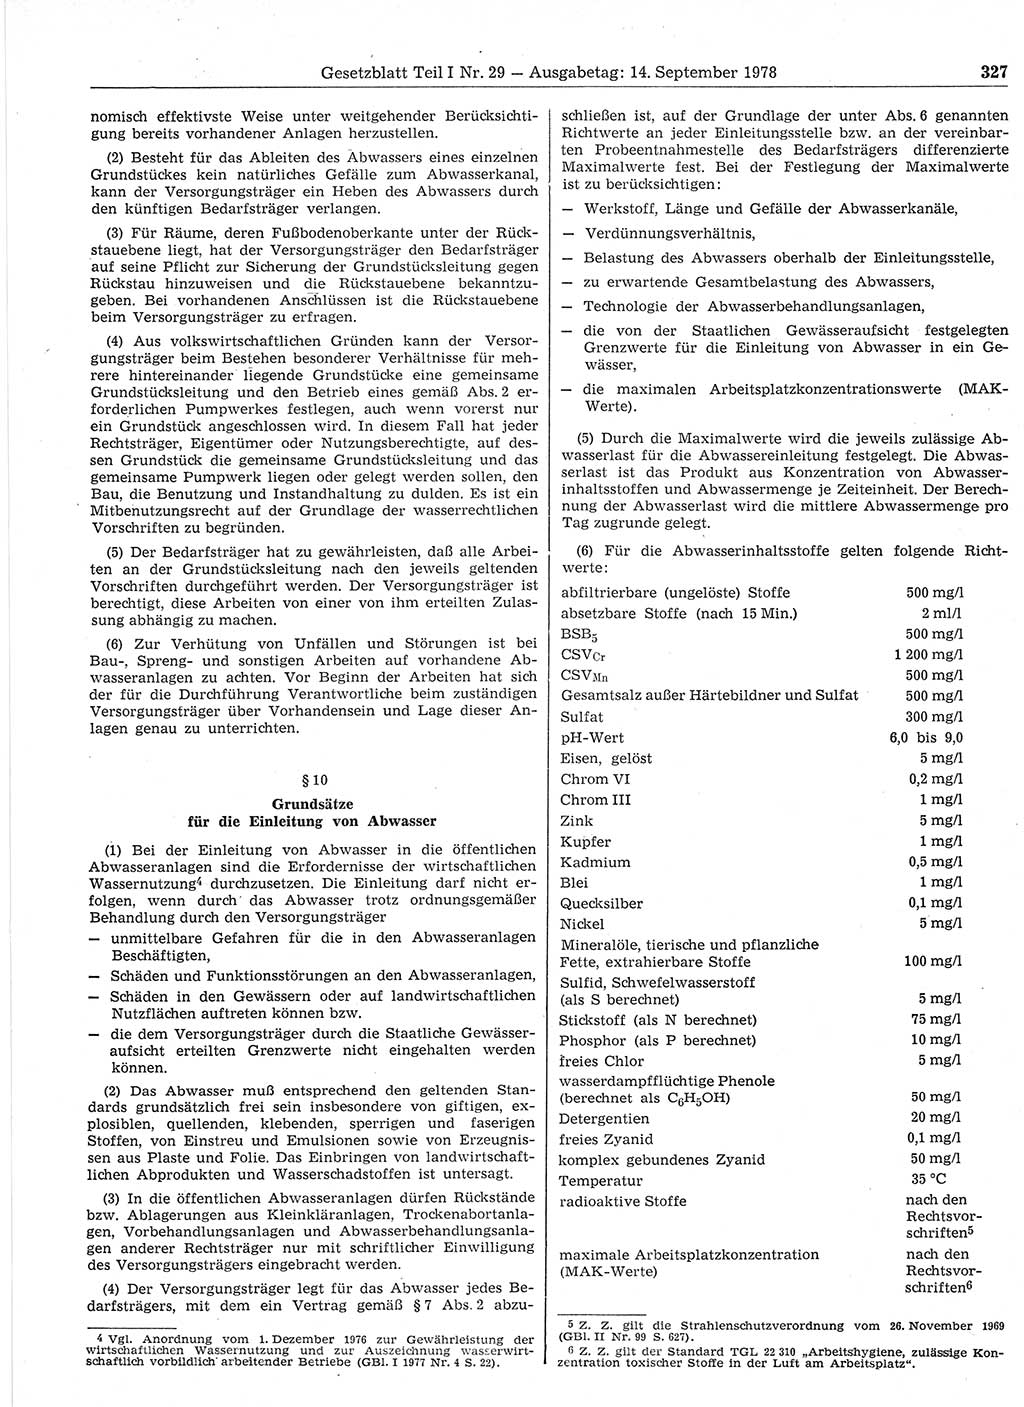 Gesetzblatt (GBl.) der Deutschen Demokratischen Republik (DDR) Teil Ⅰ 1978, Seite 327 (GBl. DDR Ⅰ 1978, S. 327)